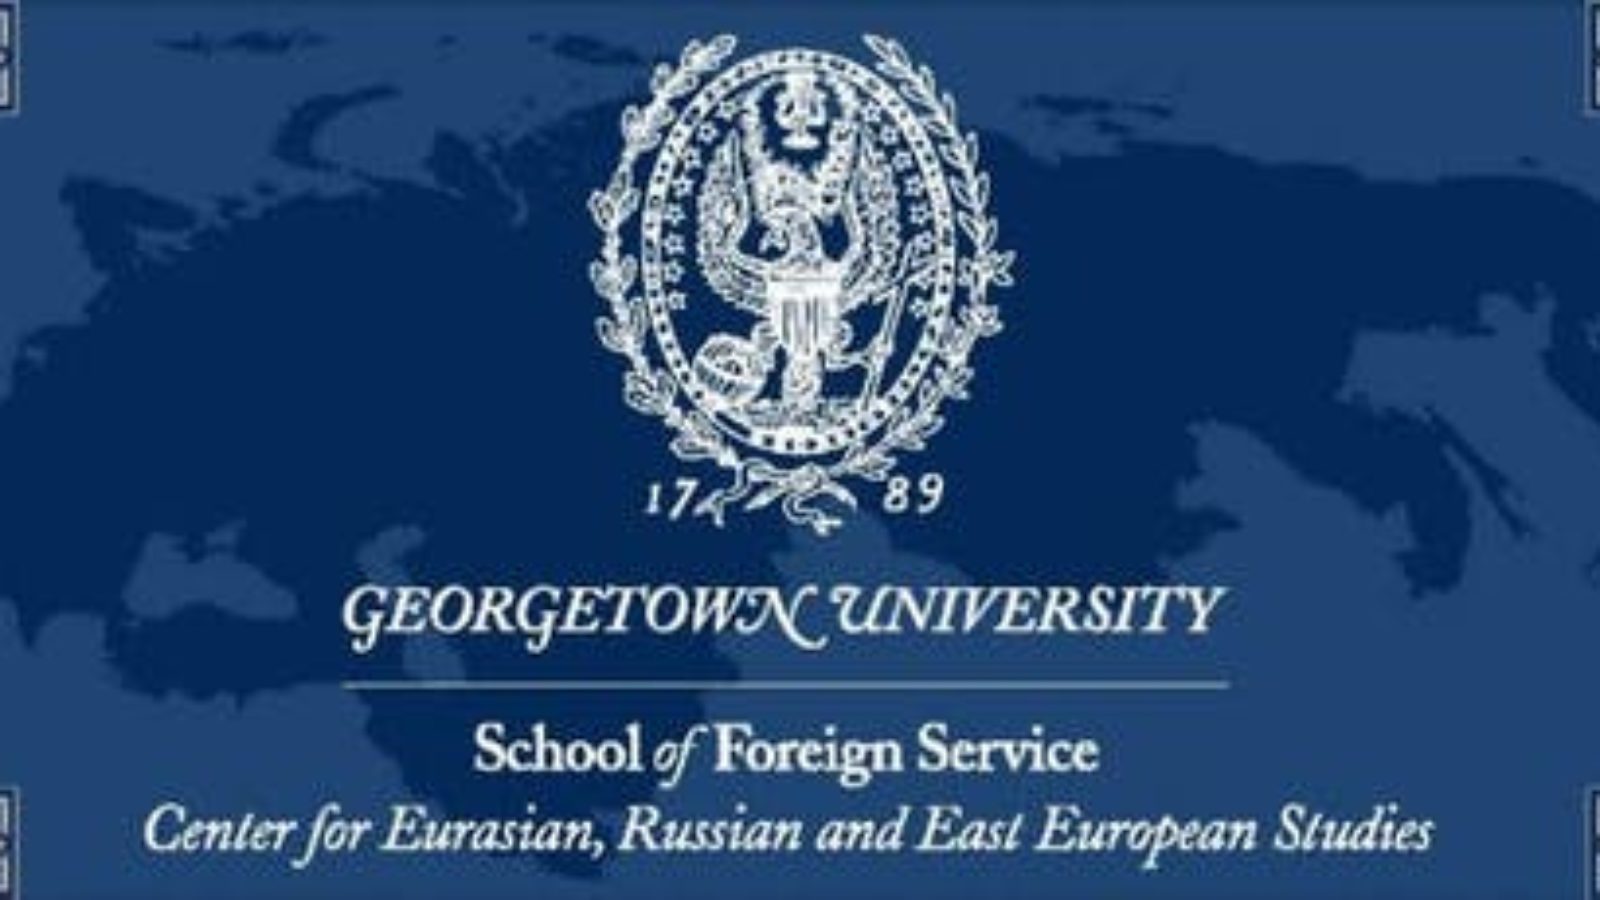 Center for Eurasian, Russian and East European Studies logo